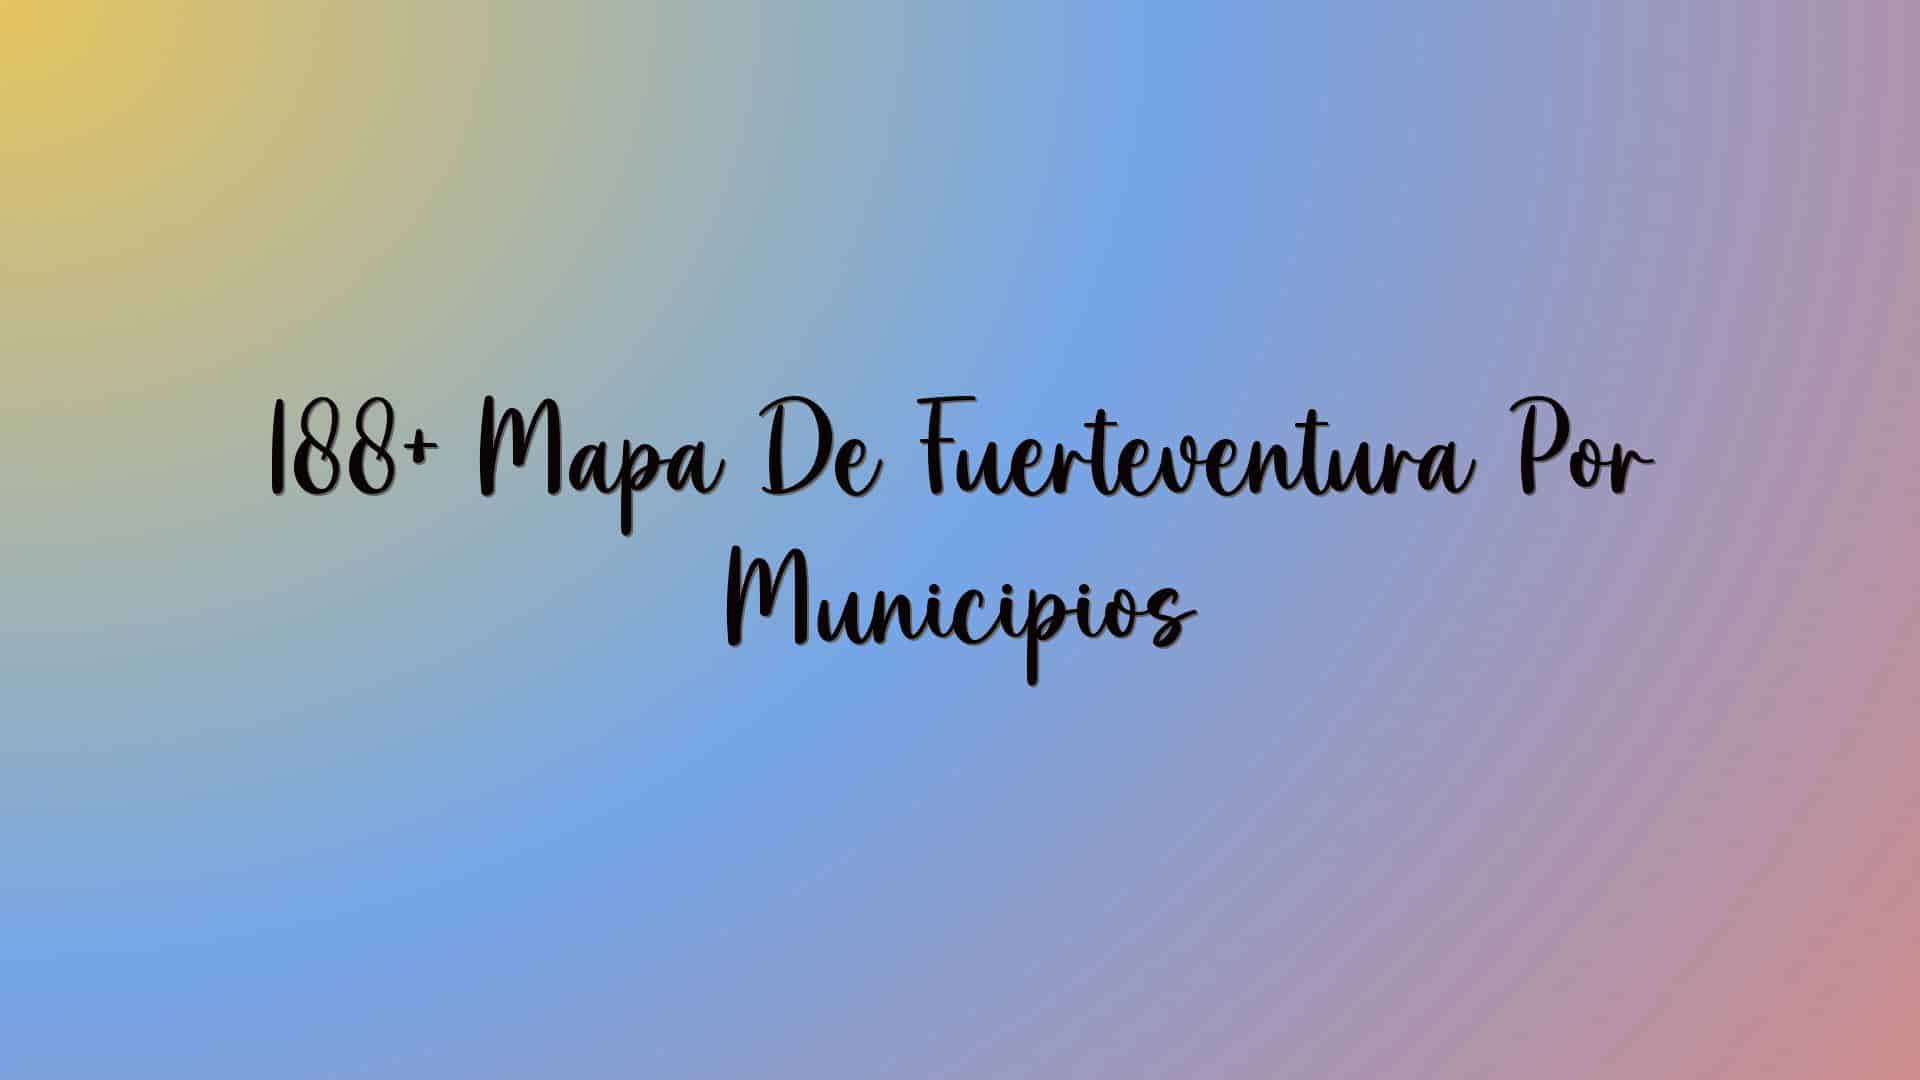 188+ Mapa De Fuerteventura Por Municipios